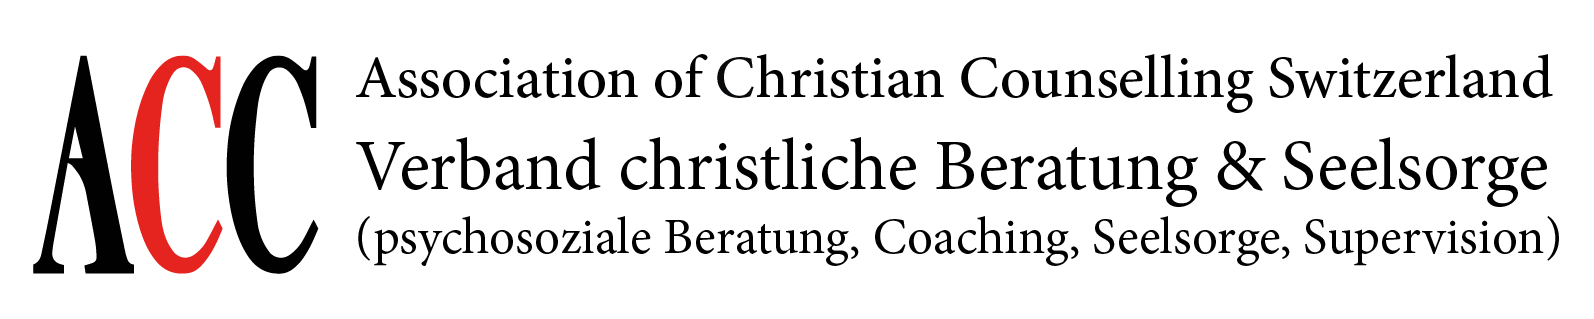 ACC-Logo